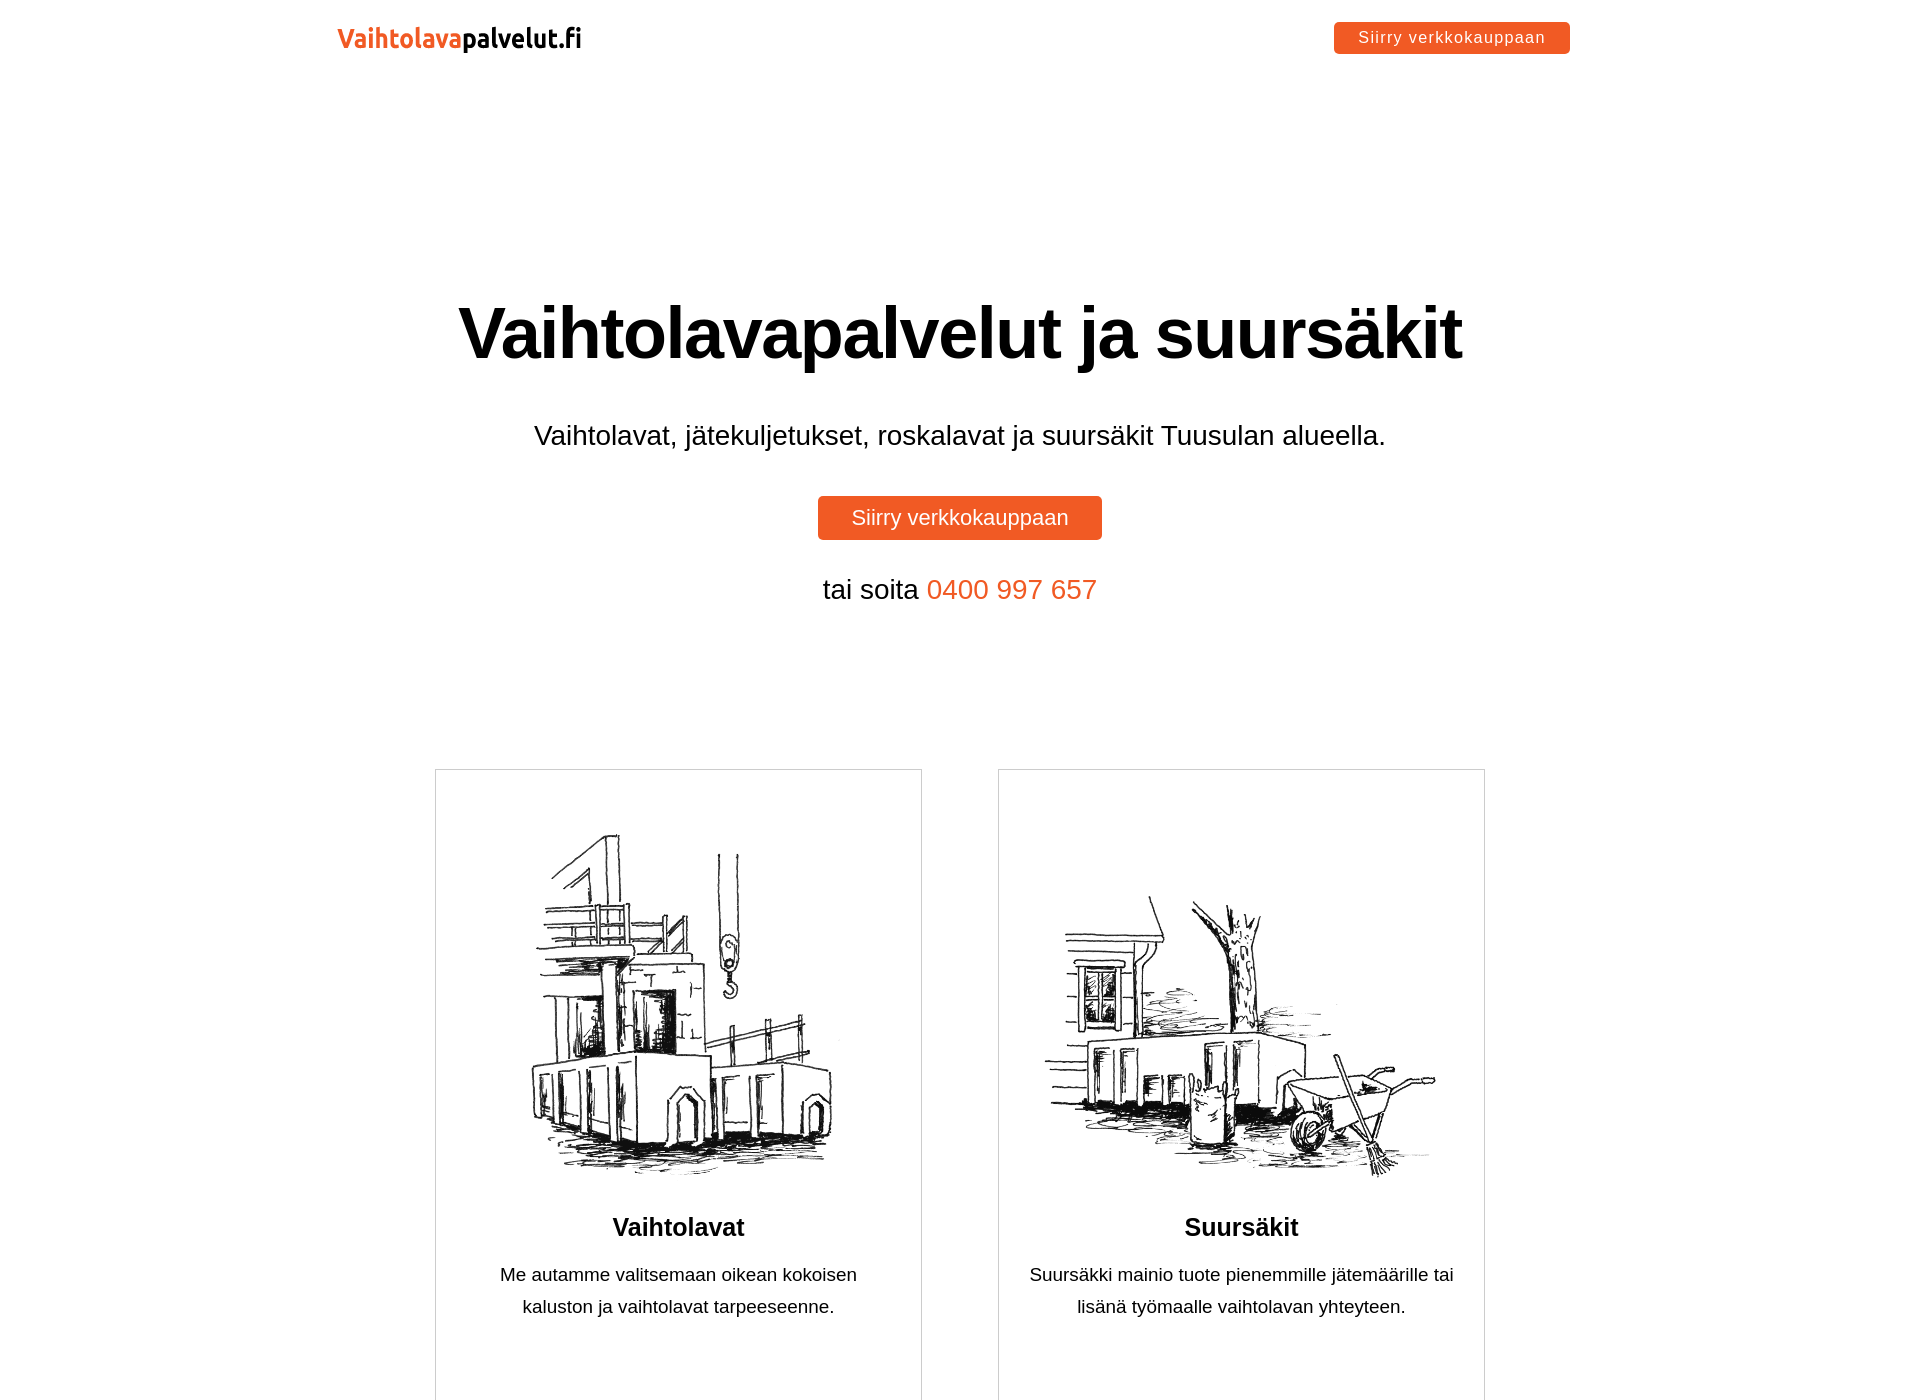 Näyttökuva vaihtolavat-tuusula.fi